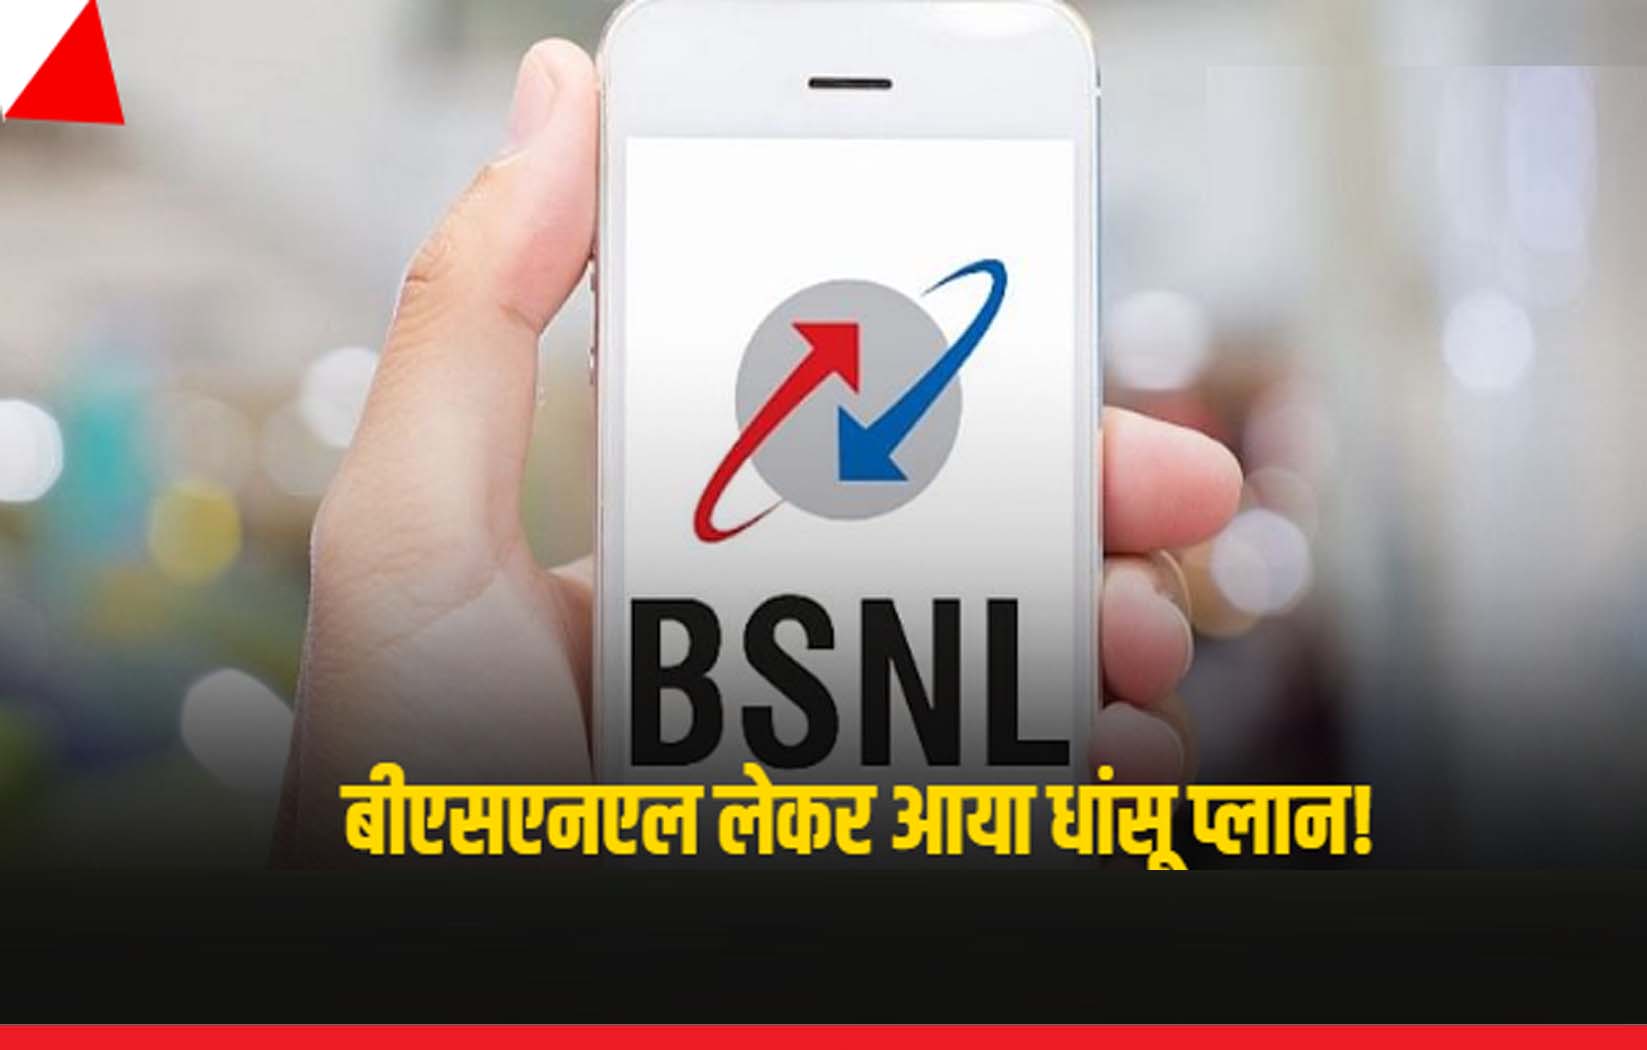 BSNL का धांसू प्लान, महज 197 रुपए में 100 दिन की वैधता के साथ कॉलिंग भी